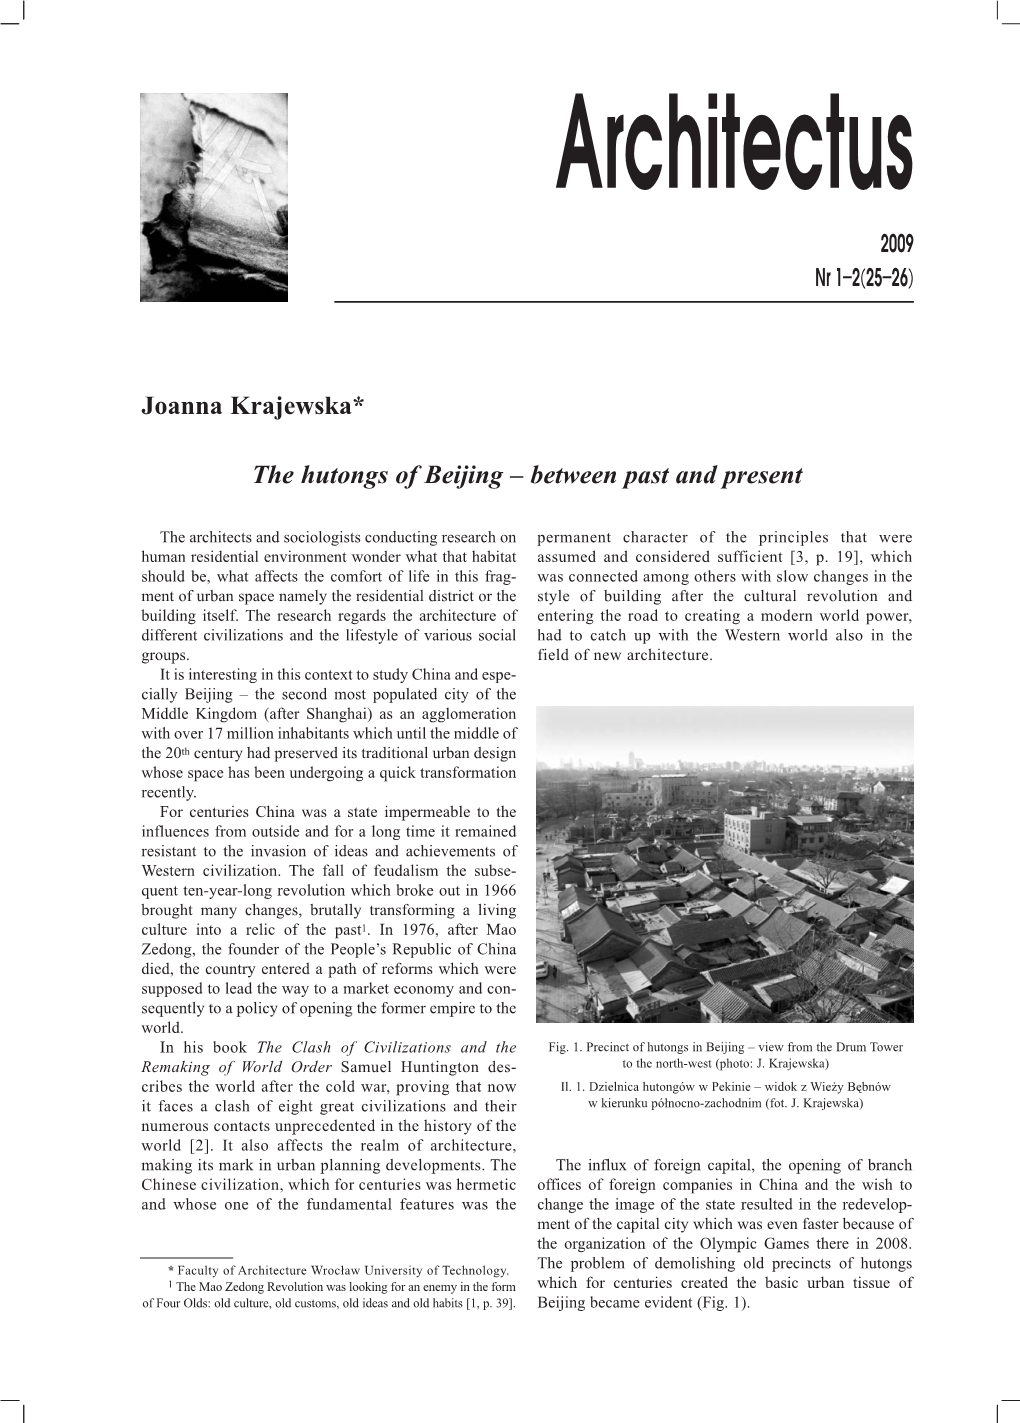 Joanna Krajewska* the Hutongs of Beijing – Between Past and Present